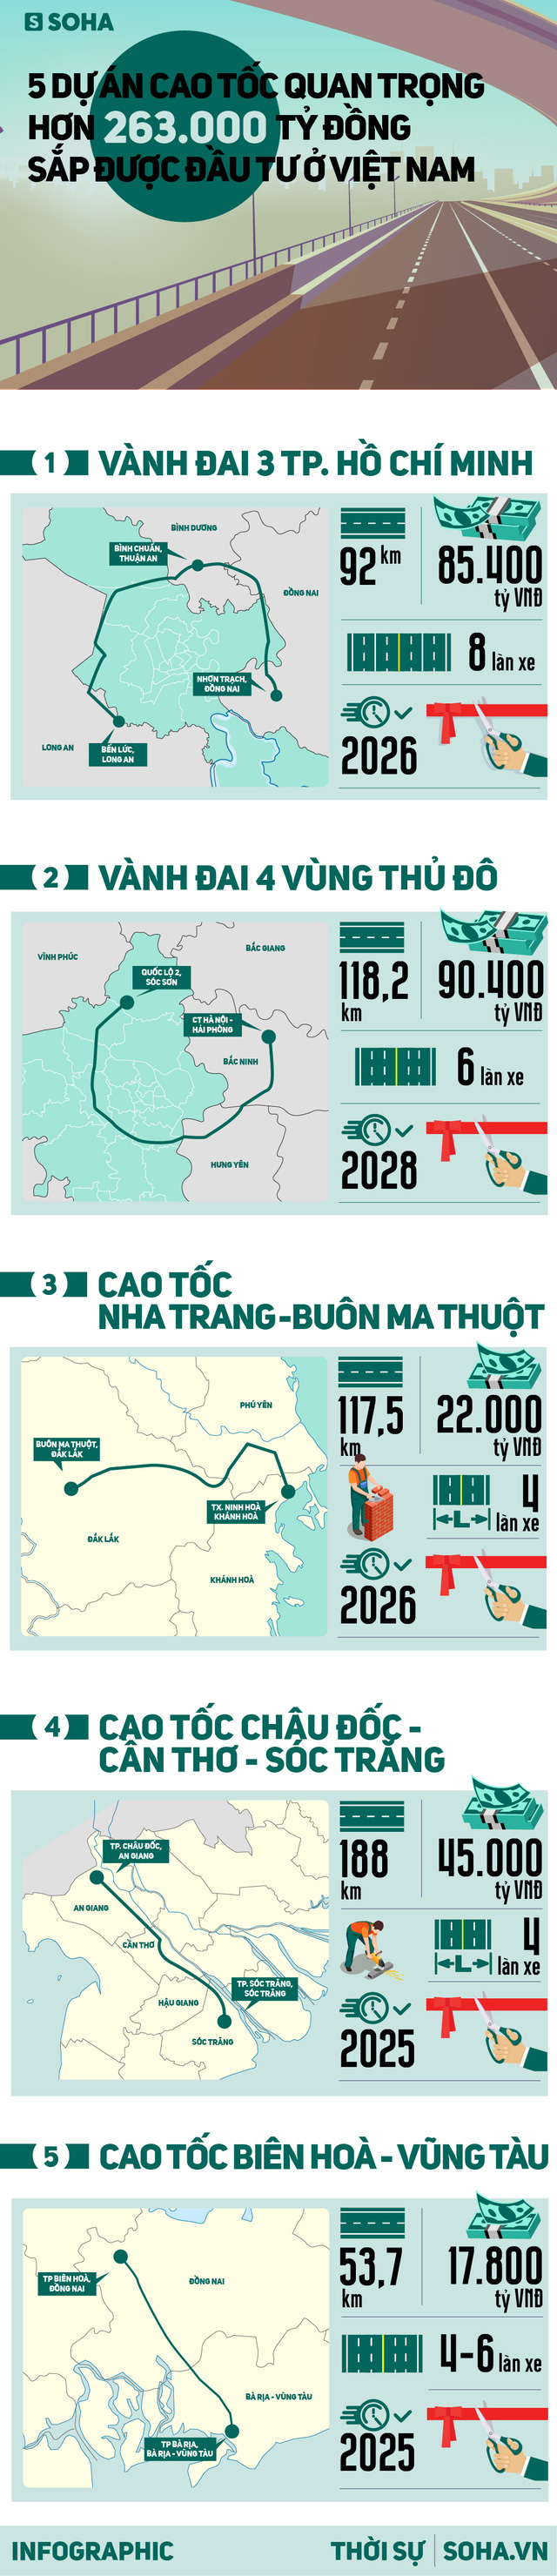 Quy mô khủng của 5 dự án cao tốc 263.000 tỷ ở Việt Nam sắp được đầu tư - Ảnh 1.